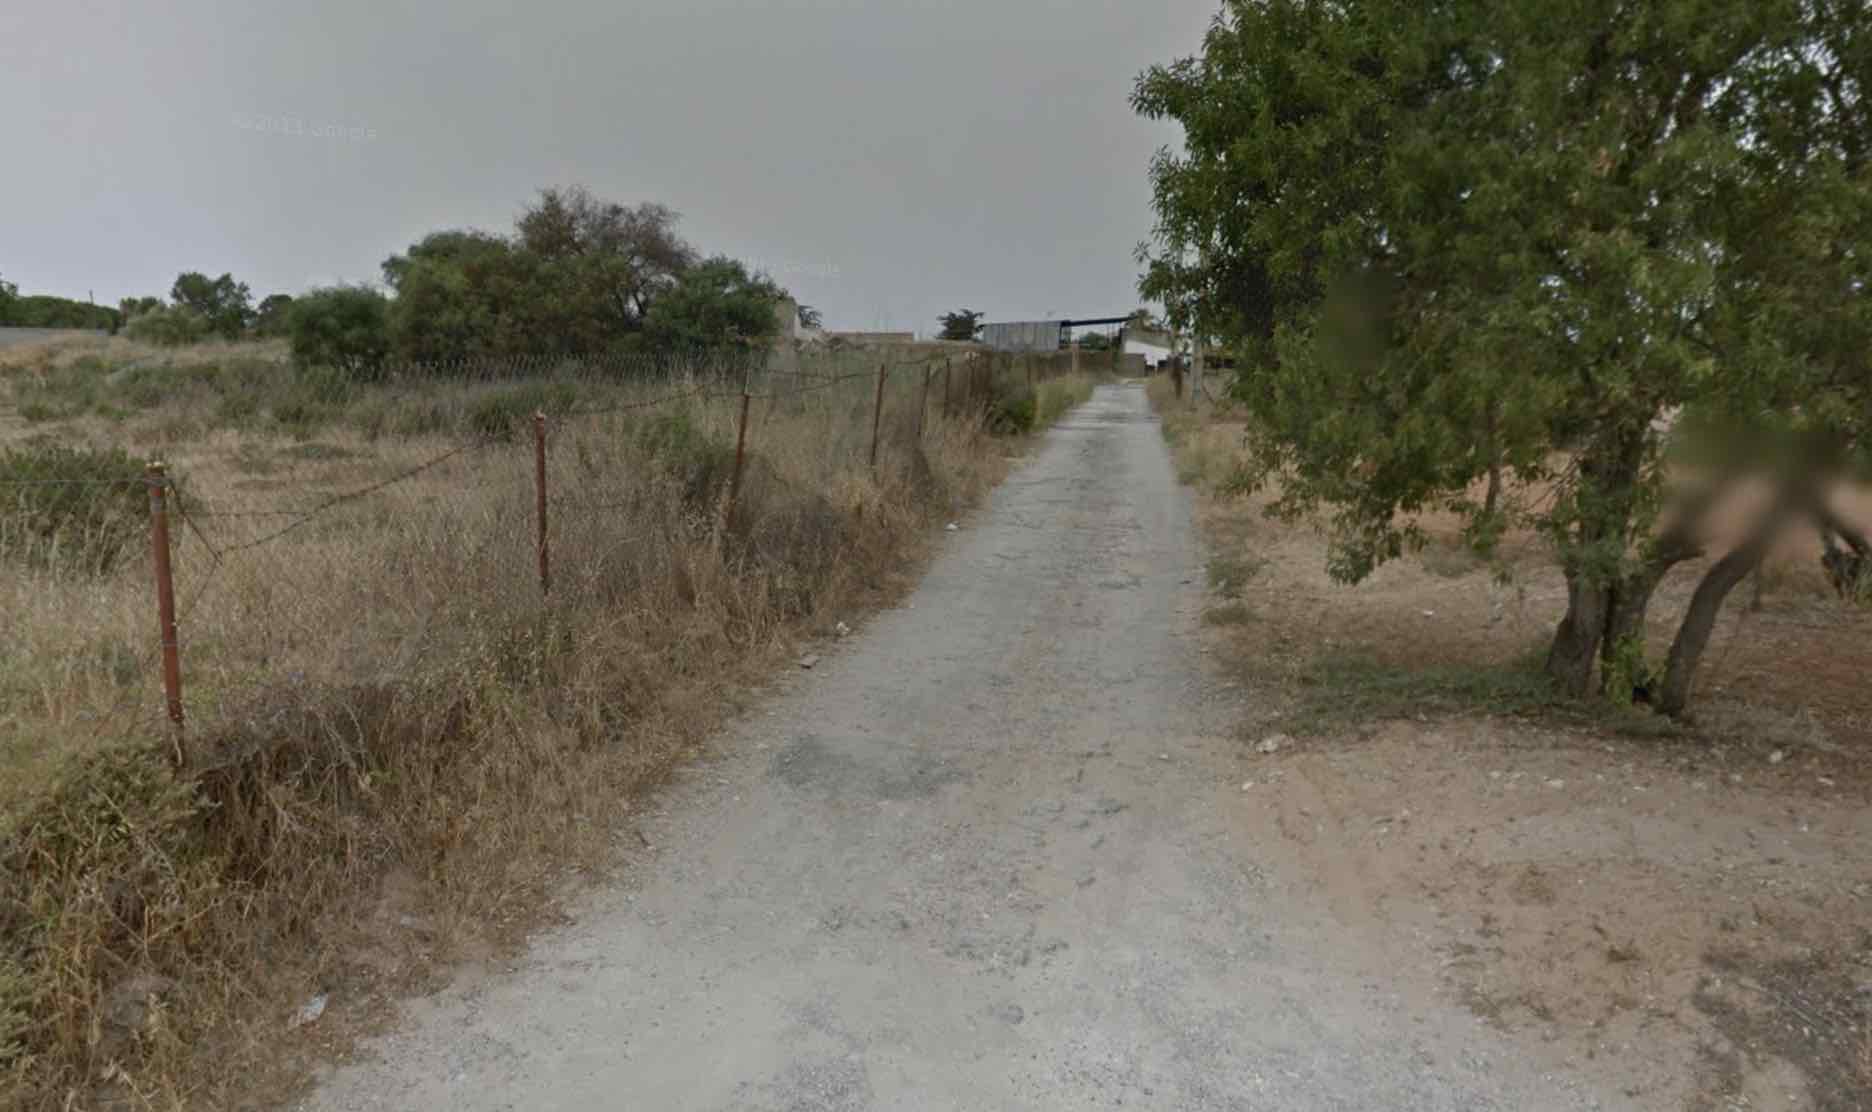 Zona de Chiclana donde ha sido hallado el cadáver, en una imagen de Google Maps.